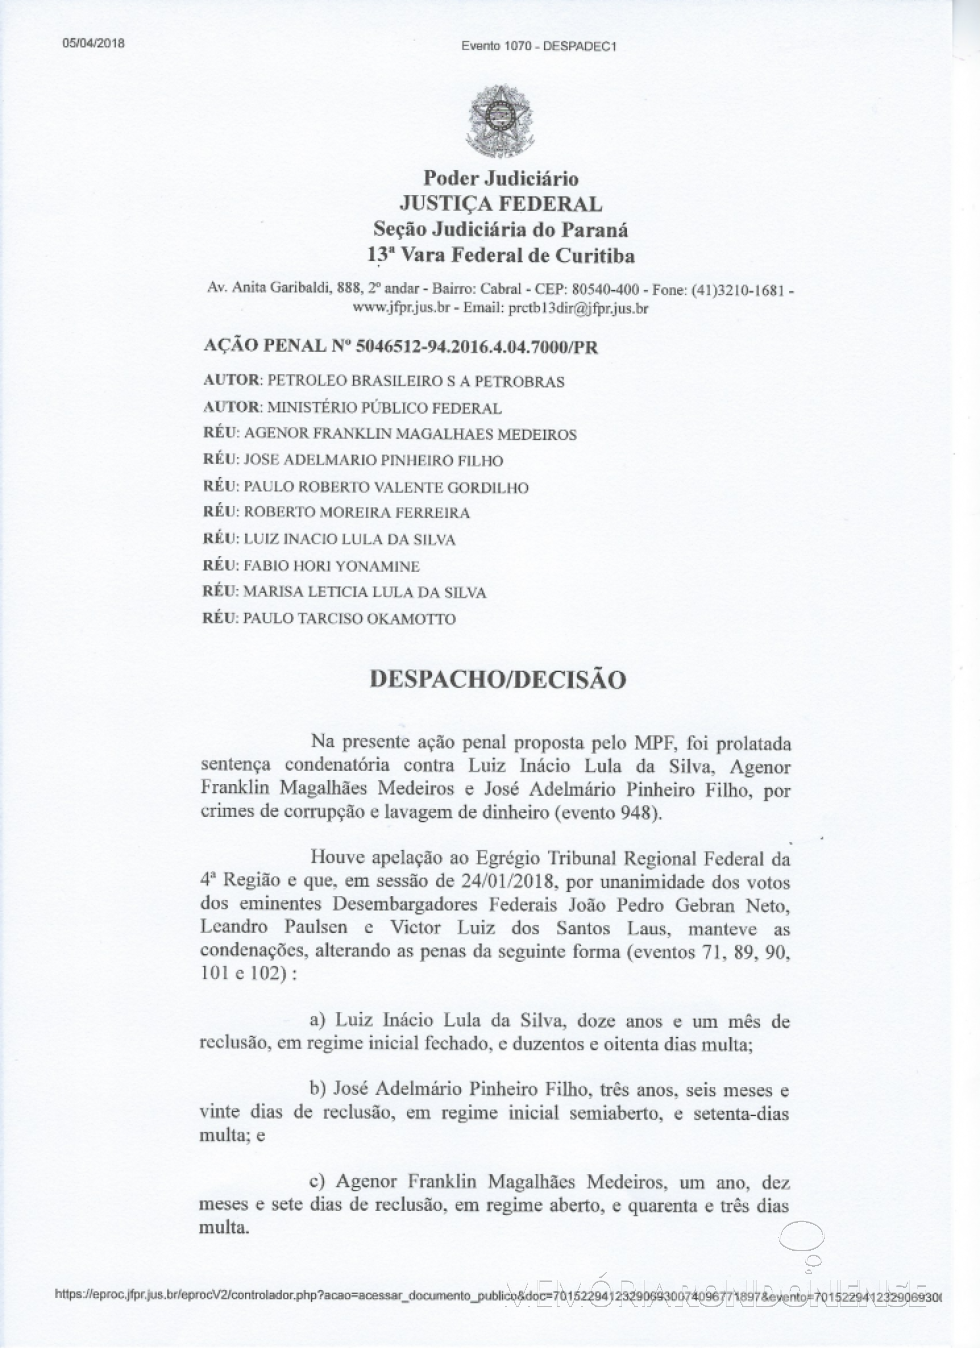 || Despacho decisório (1ª página) de mandado de prisão do ex-presidente Lula. 
Imagem: Acervo da Justiça Federal - 13ª Vara de Curitiba - FOTO 17 - 